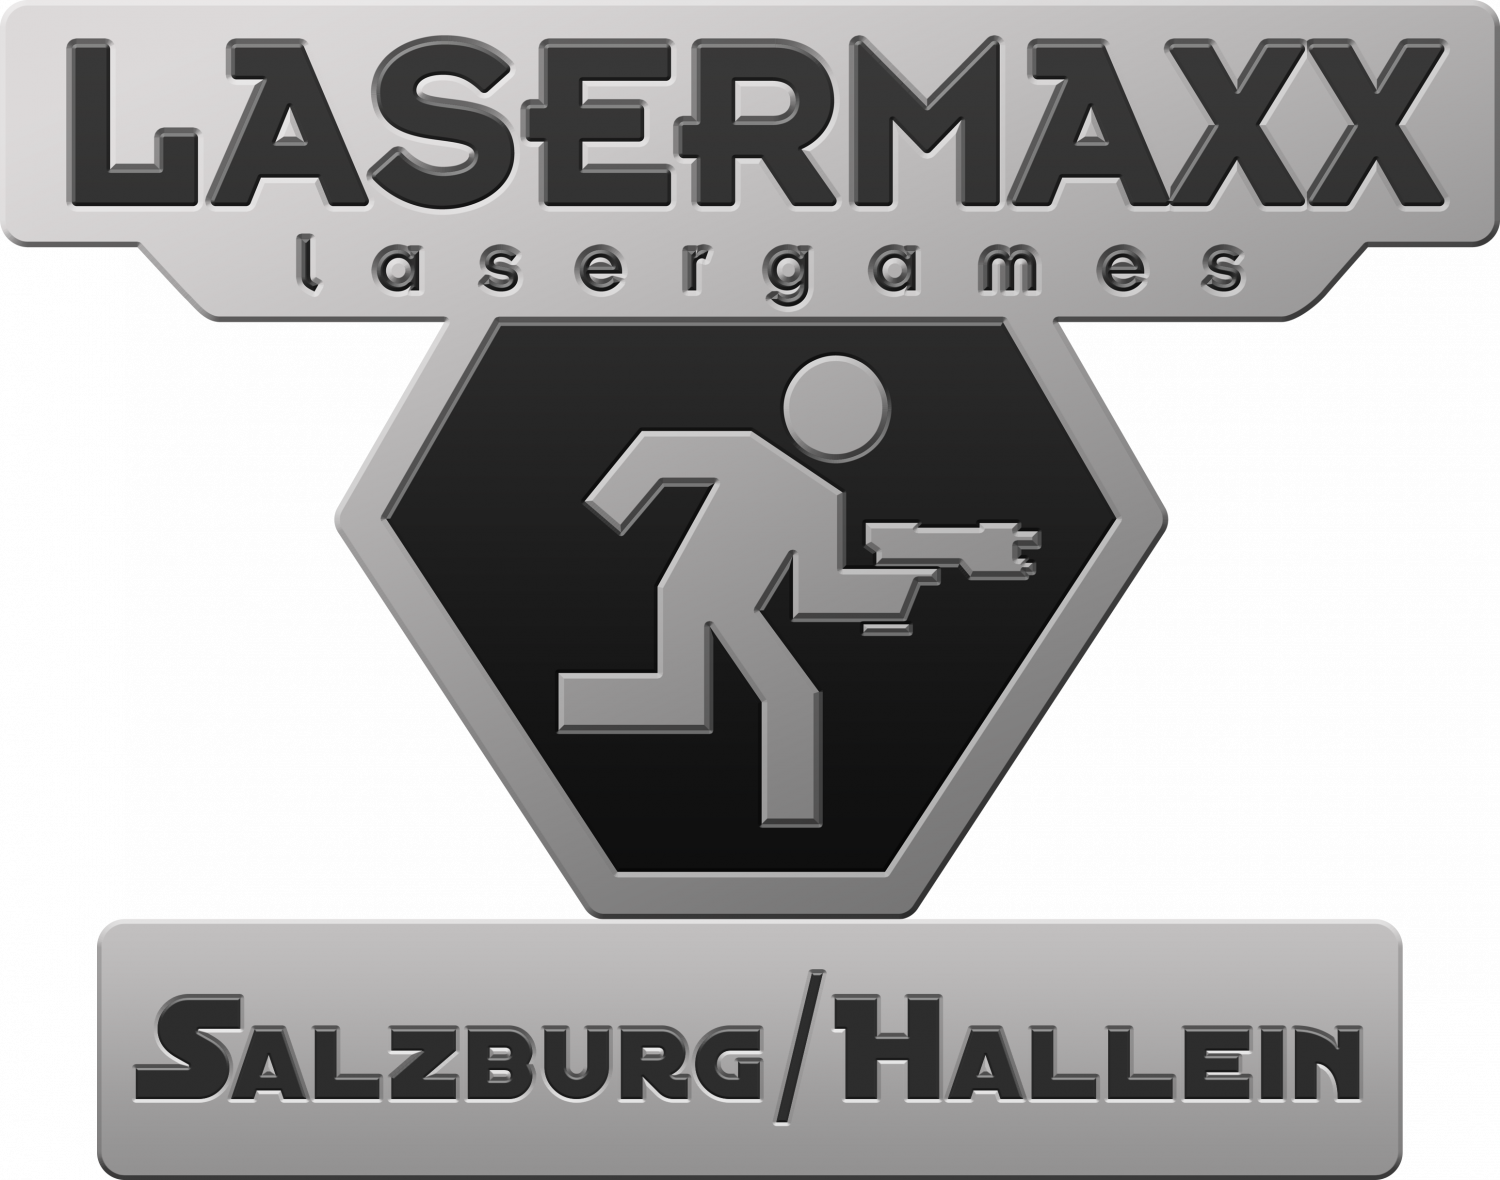 LaserMAXX Hallein